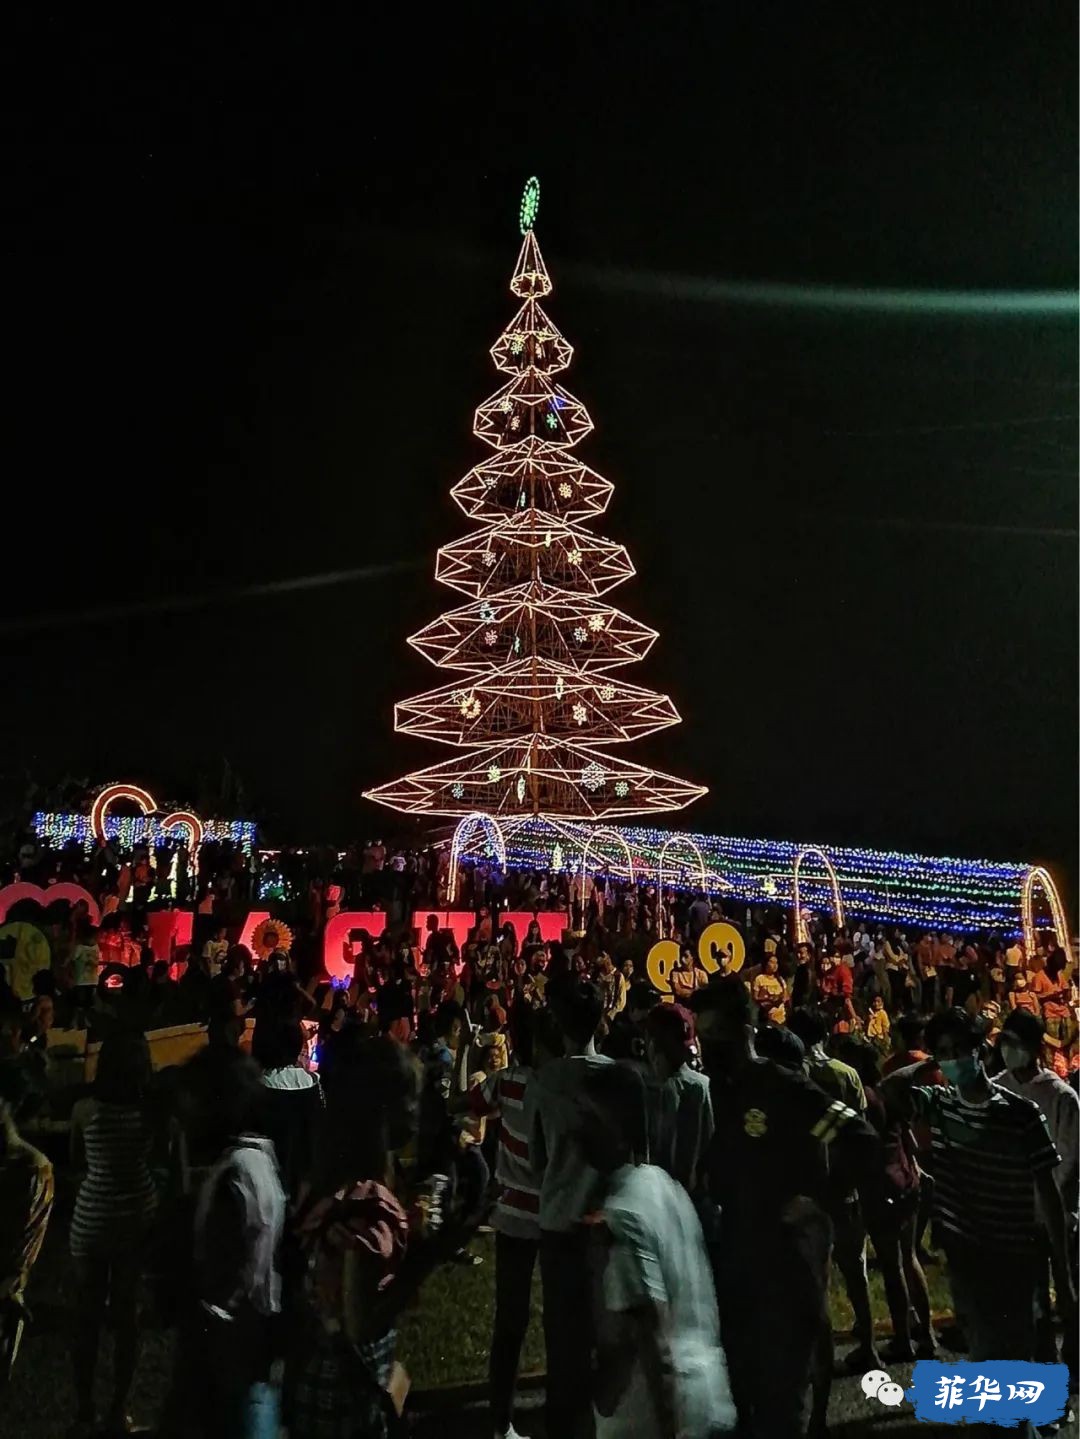 点亮每一棵圣诞树!菲律宾圣诞庆祝活动正式拉开序幕w6.jpg